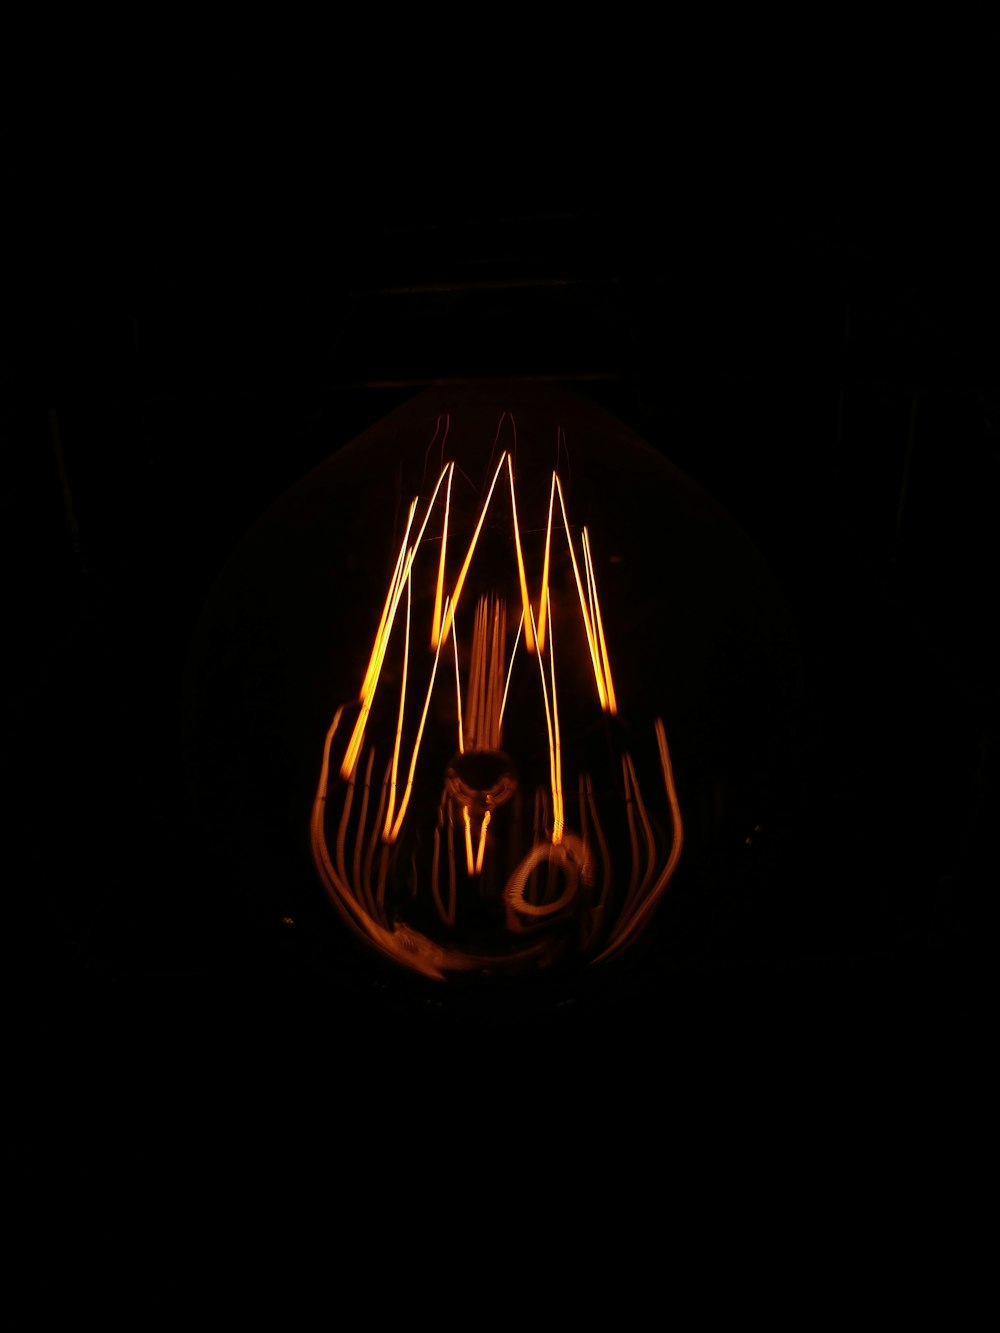 lighted round orange light in dark room